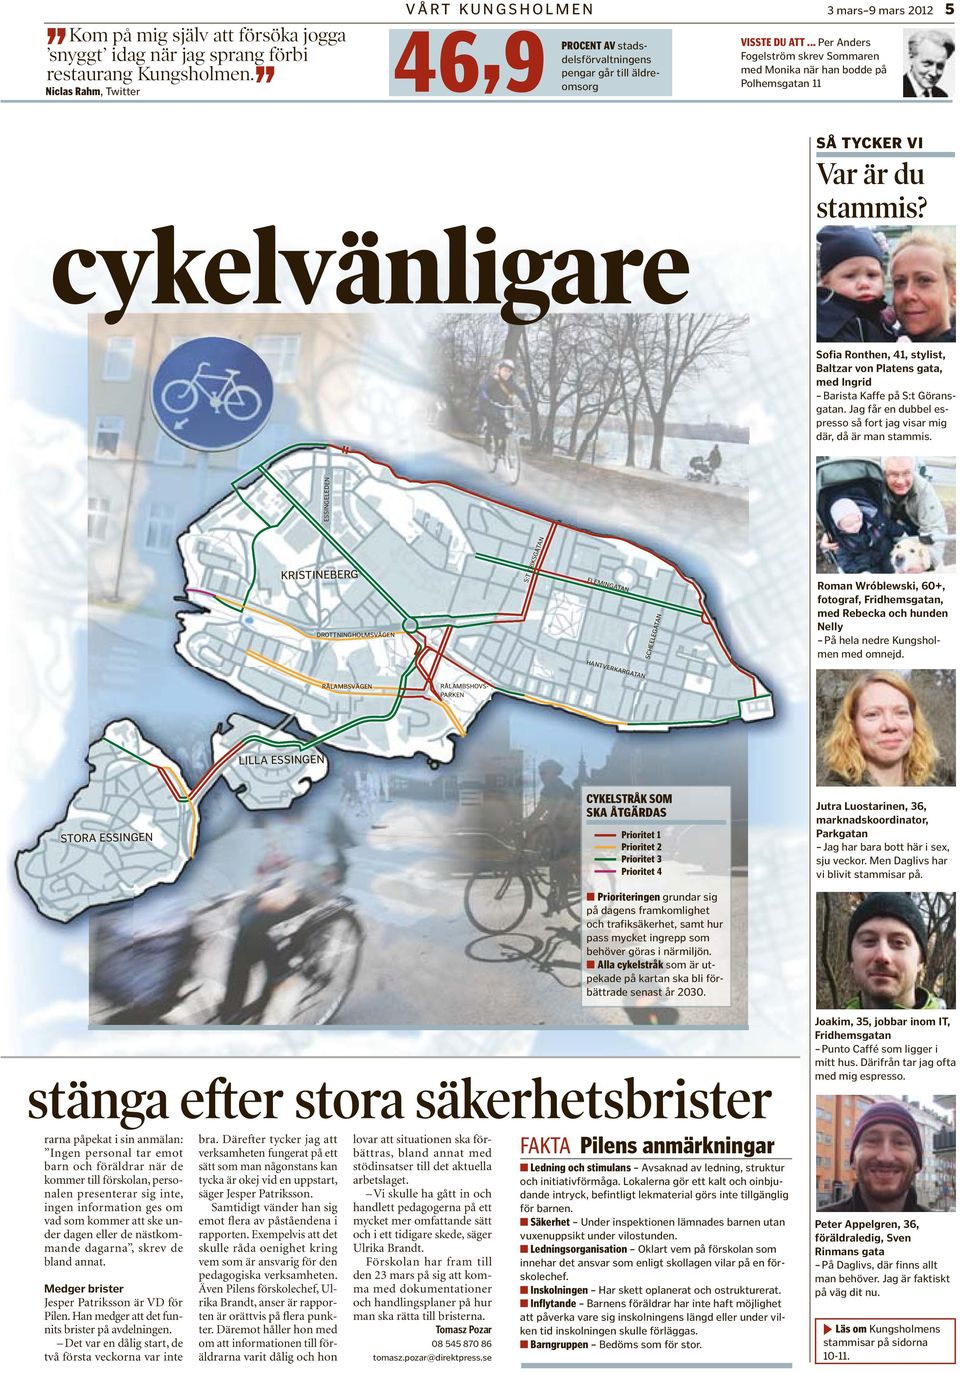 .. Per Anders Fogelström skrev Sommaren med Monika när han bodde på Polhemsgatan 11 cykelvänligare SÅ TYCKER VI Var är du stammis?